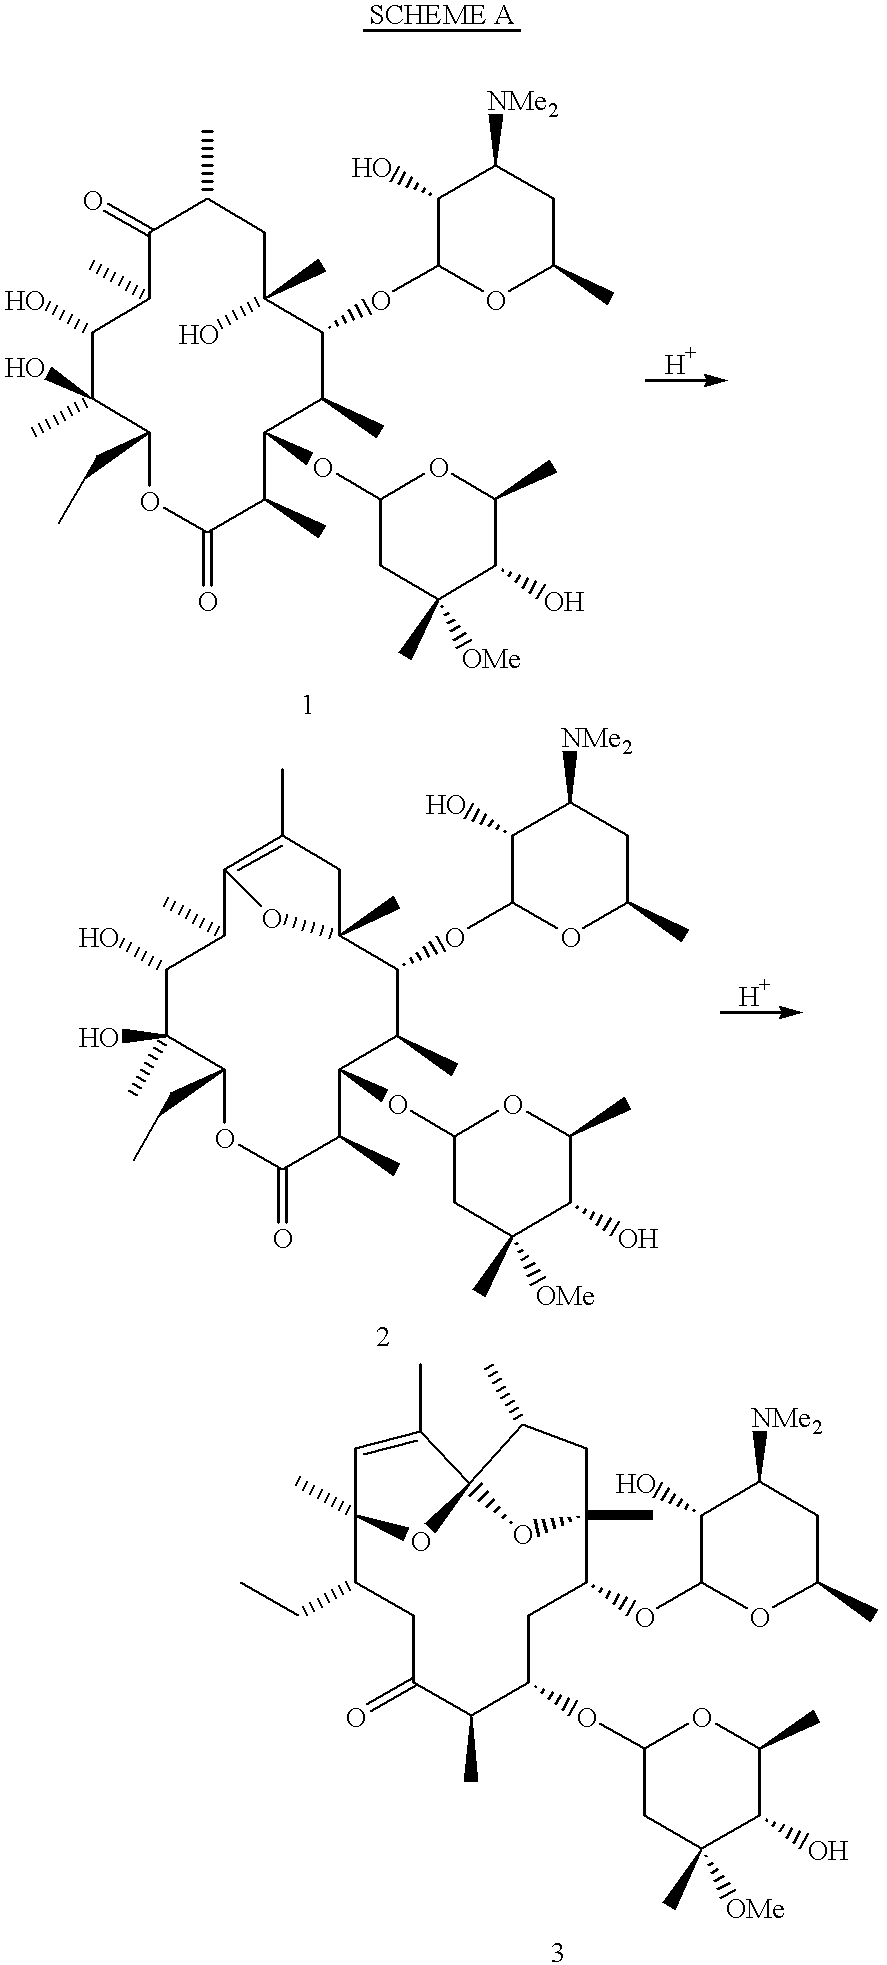 Motilide compounds